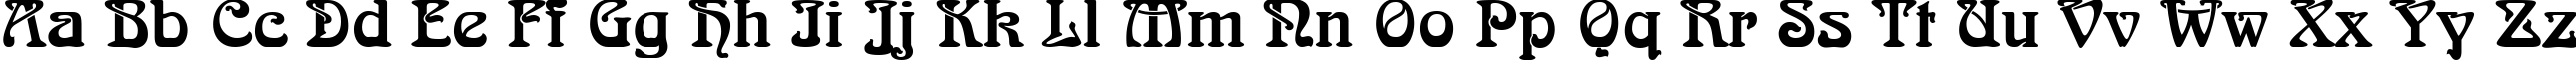 Пример написания английского алфавита шрифтом SkazkaForSerge Medium